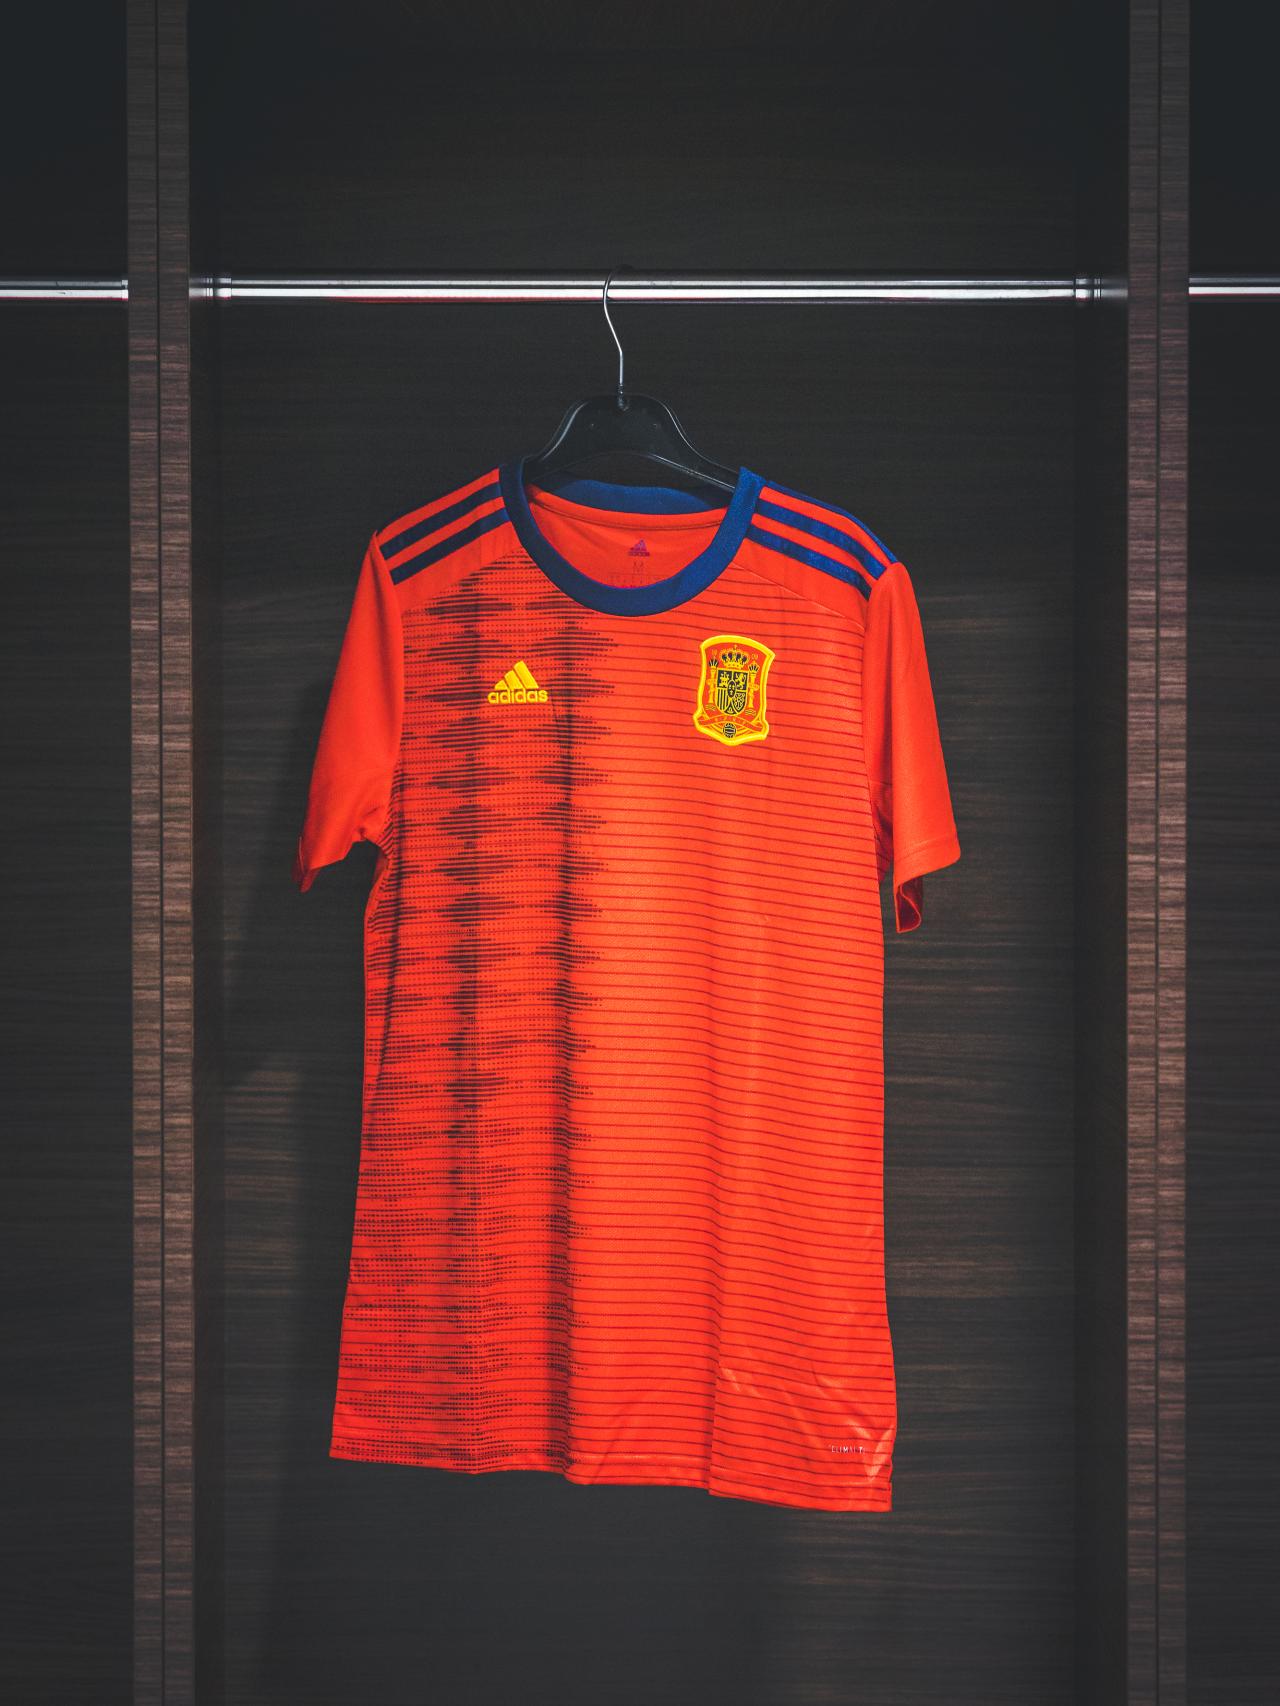 de Mujer: Así es la nueva camiseta de la selección española femenina para el Mundial